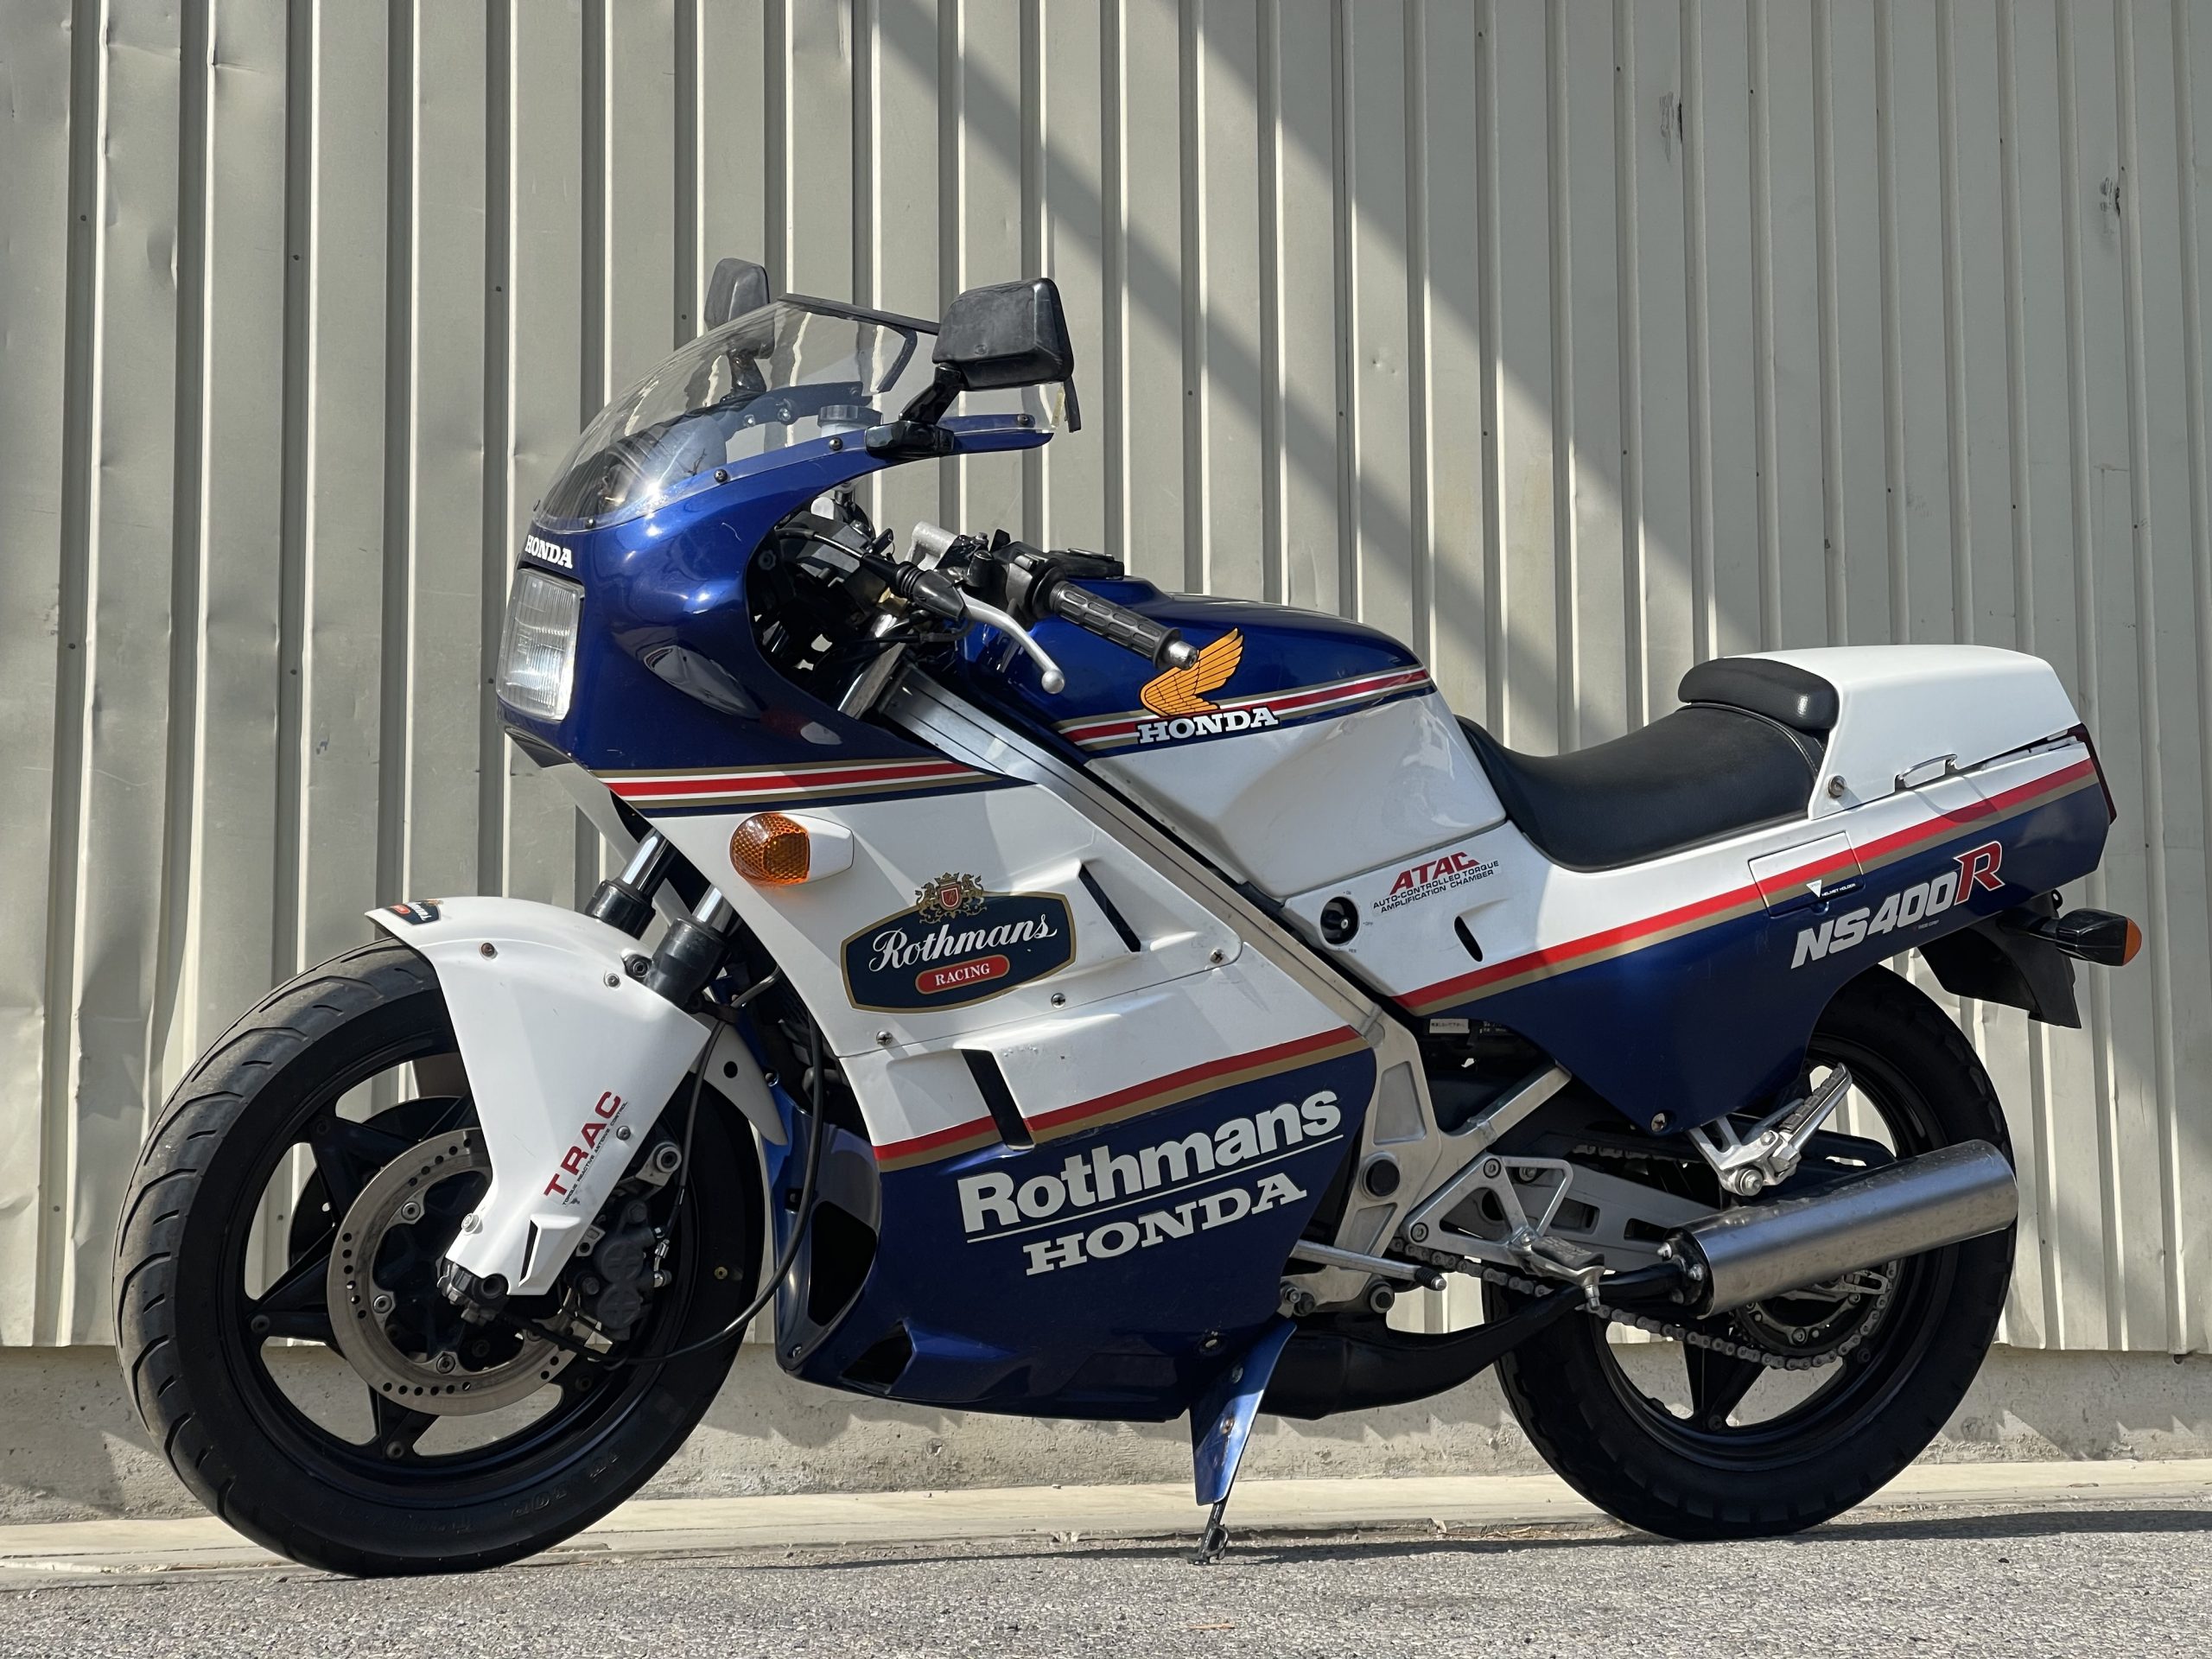 HONDA ホンダ NS400R 1985-1988 NC19 LED M3 H4 ヘッドライト Hi/Lo S25 50連 テールランプ バイク用 2個セット ホワイト